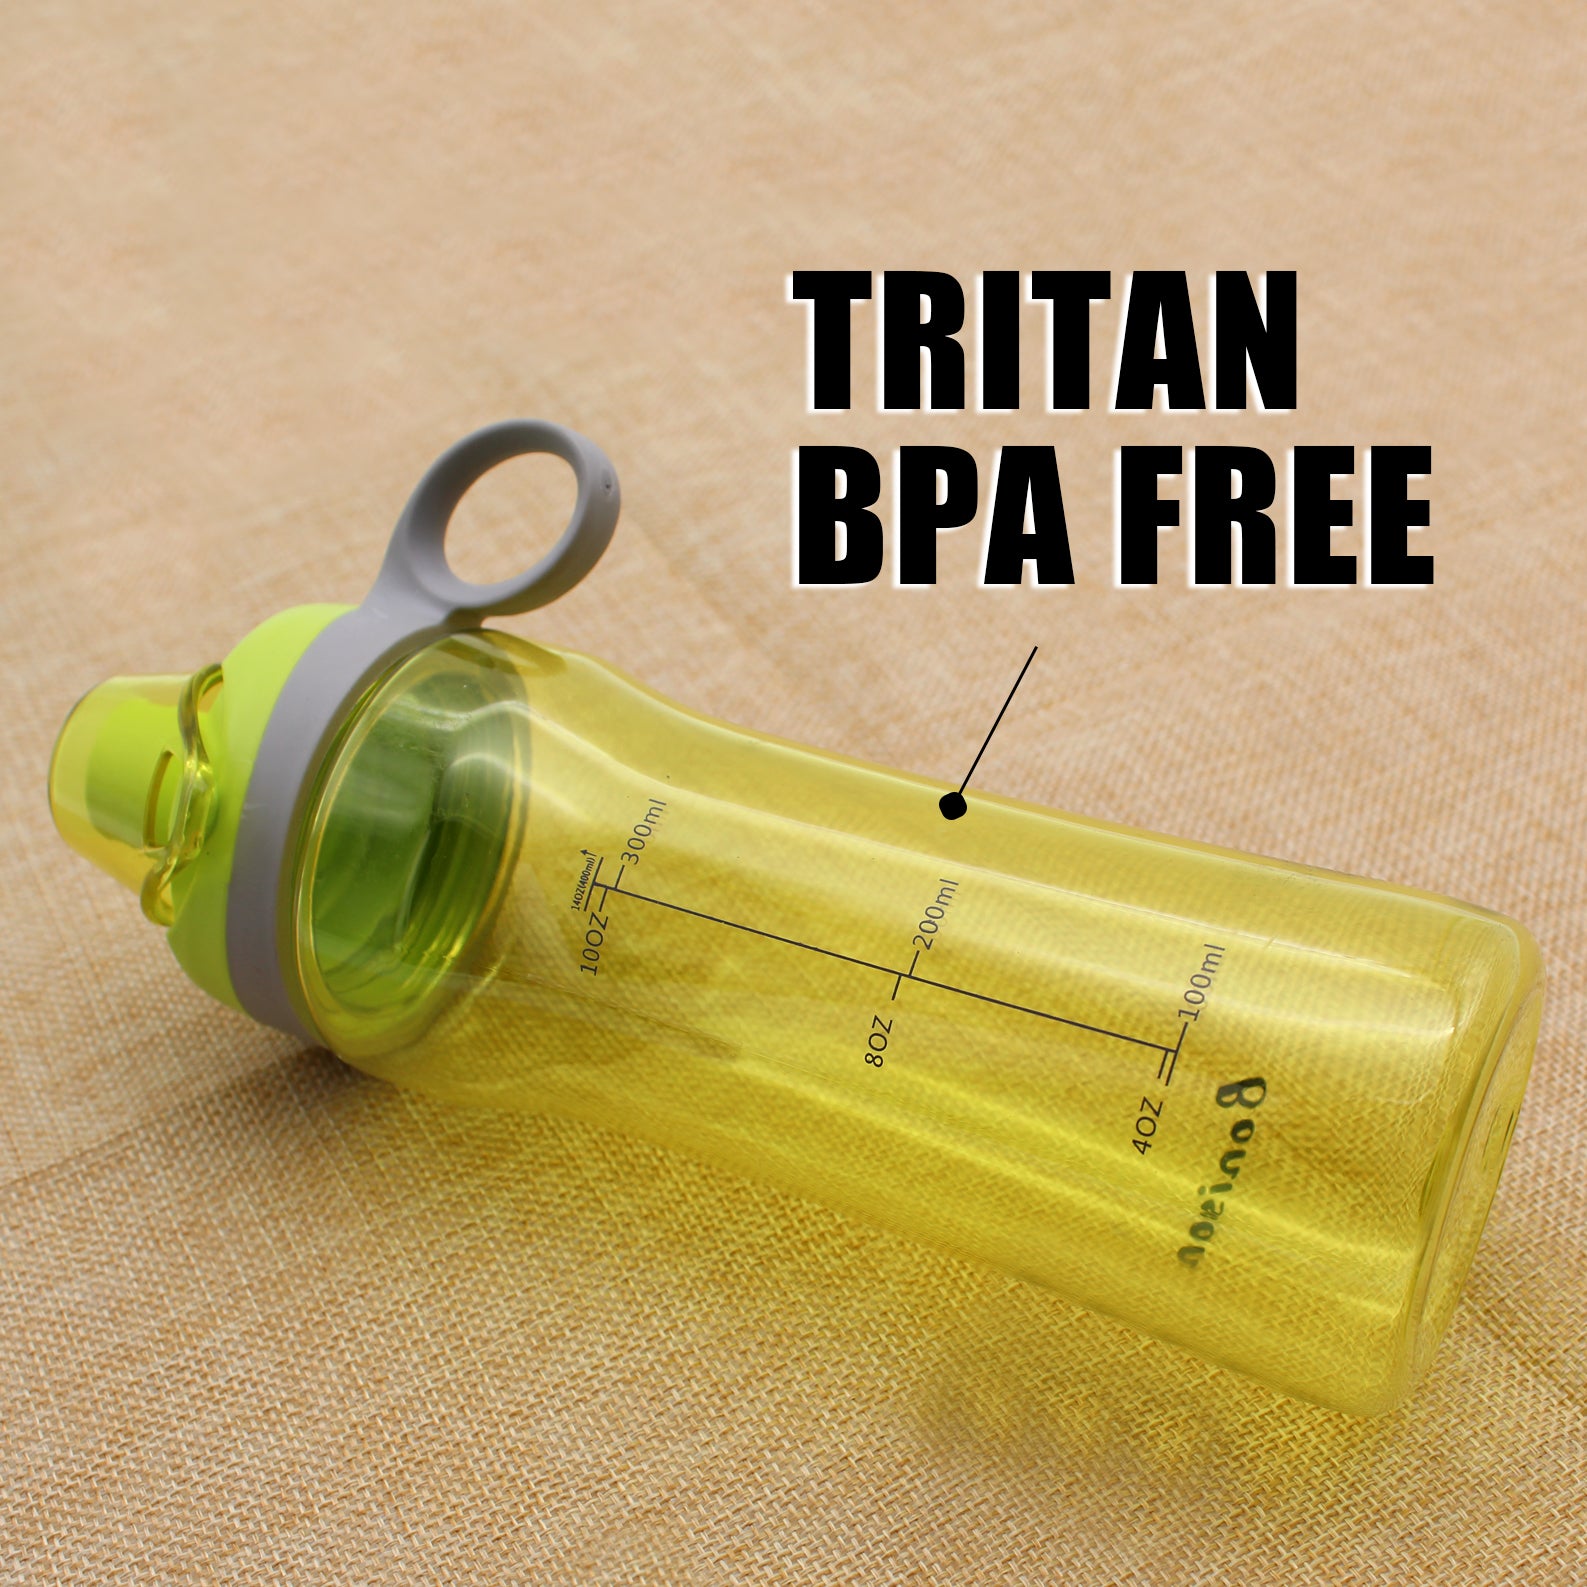 Bonison 36 OZ Sports Bottle Water With Flip Top Lid Leak Proof Bpa